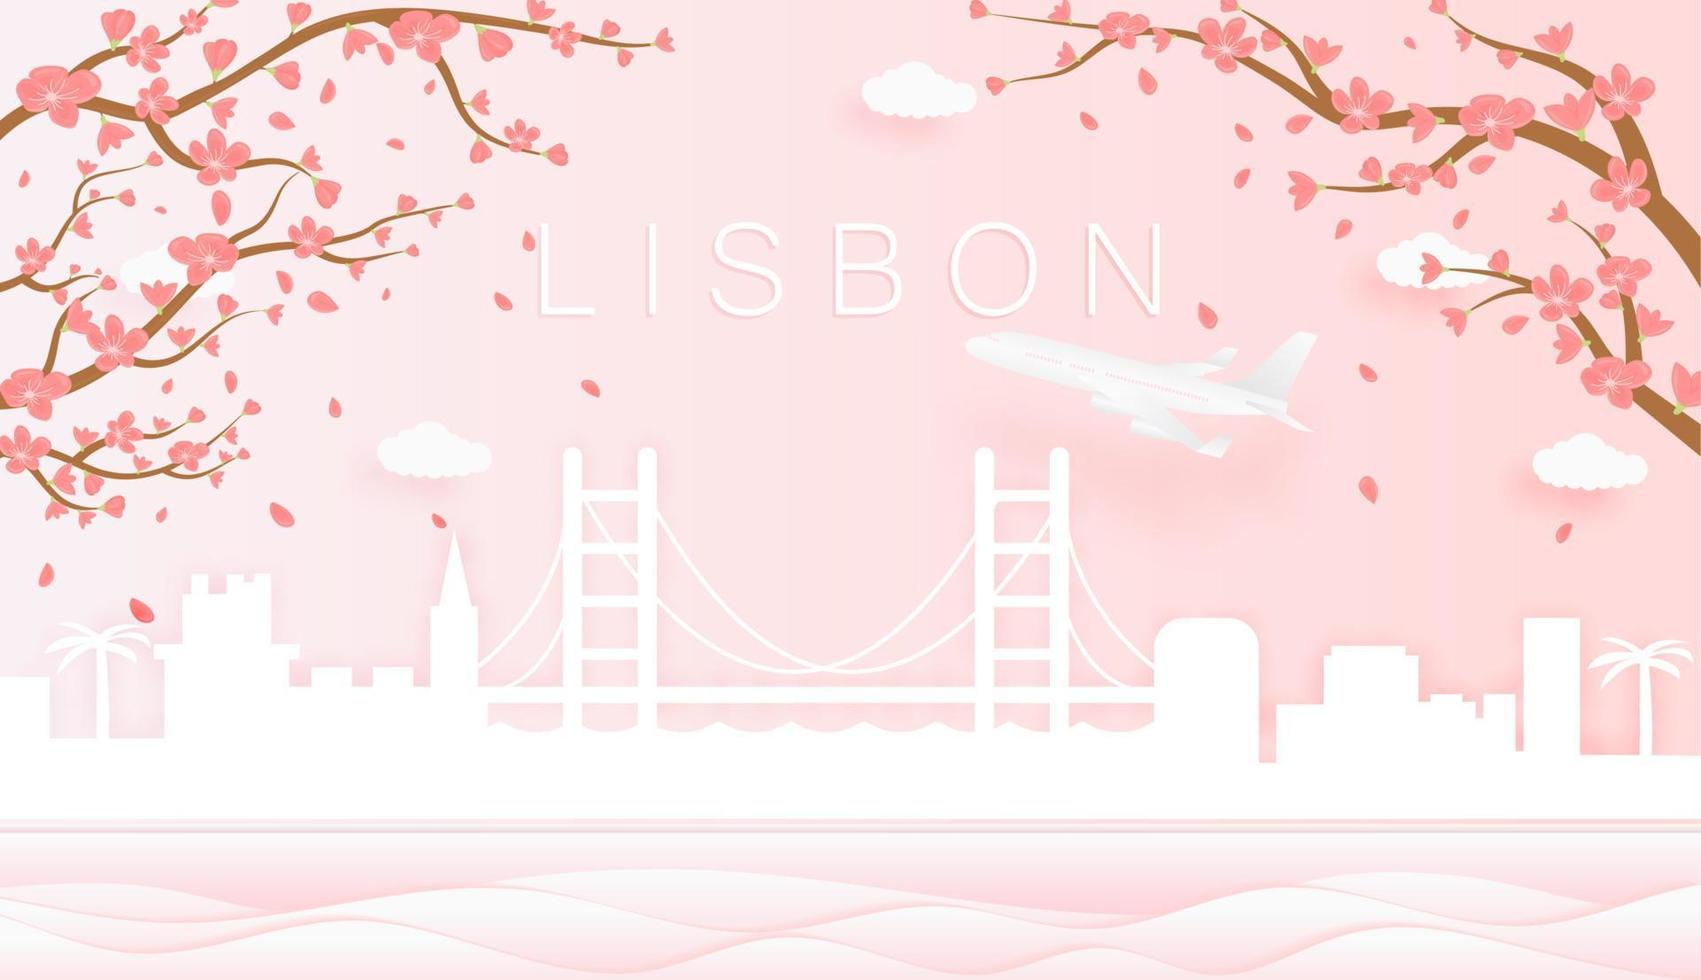 Panorama Reise Postkarte, Poster, Tour Werbung von Welt berühmt Sehenswürdigkeiten von Lissabon, Frühling Jahreszeit mit Blühen Blumen im Baum im Papier Schnitt Stil vektor